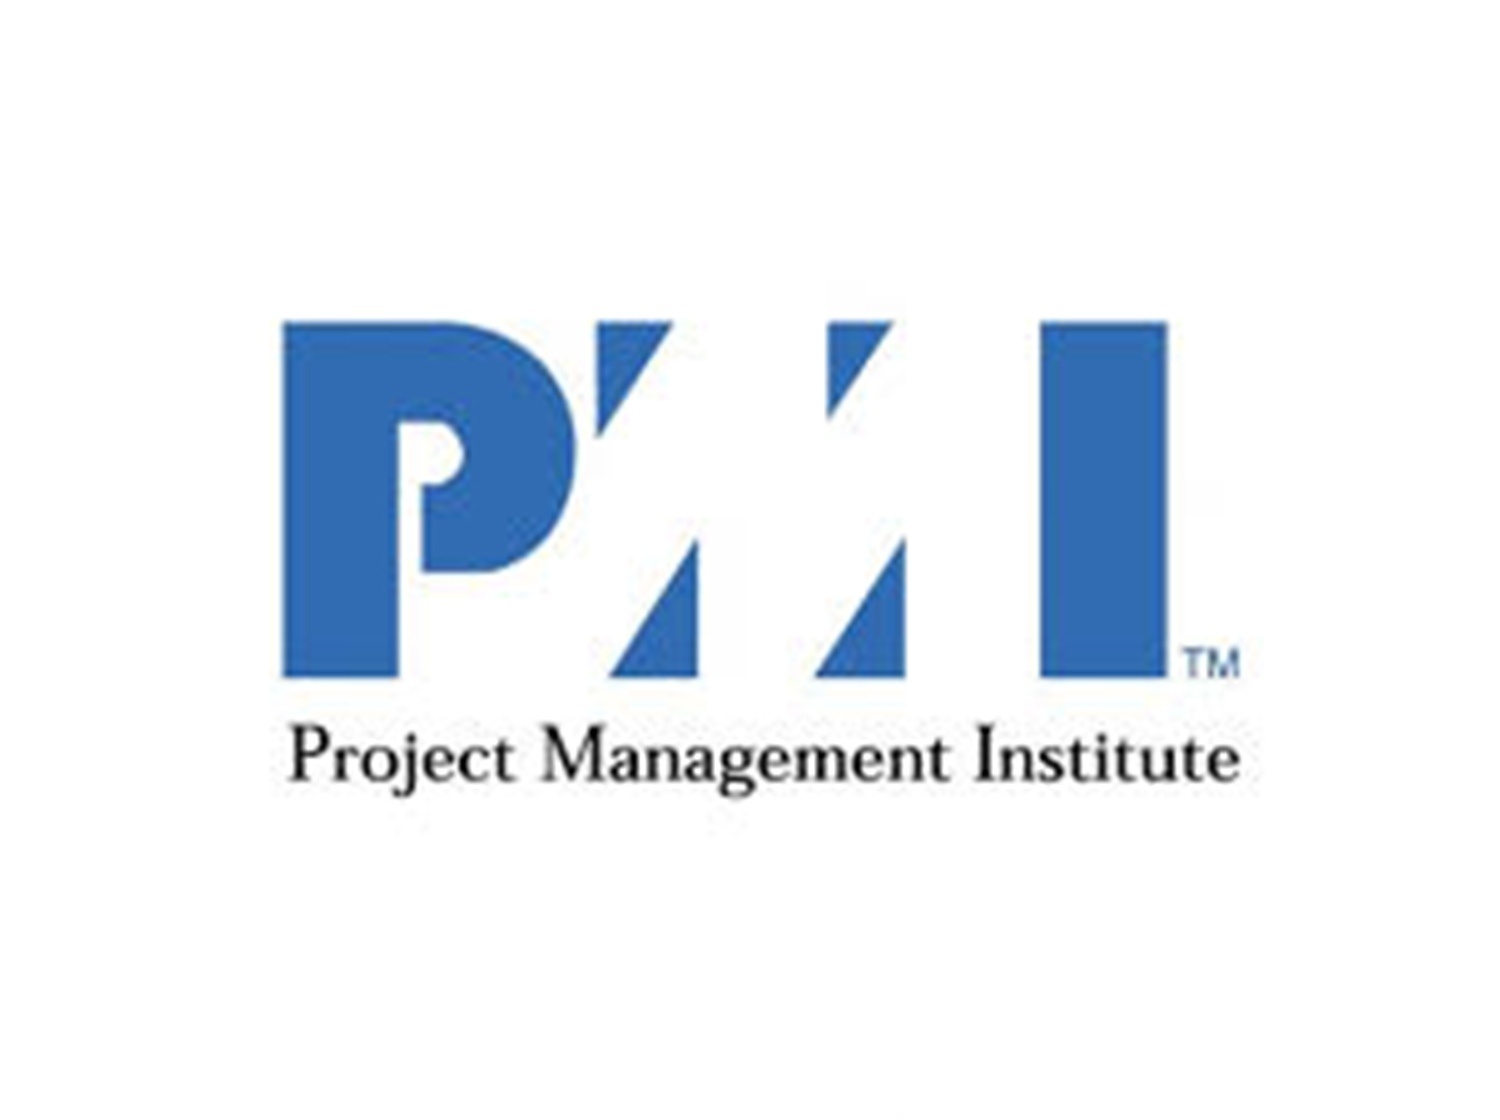 Project management institute pfm client